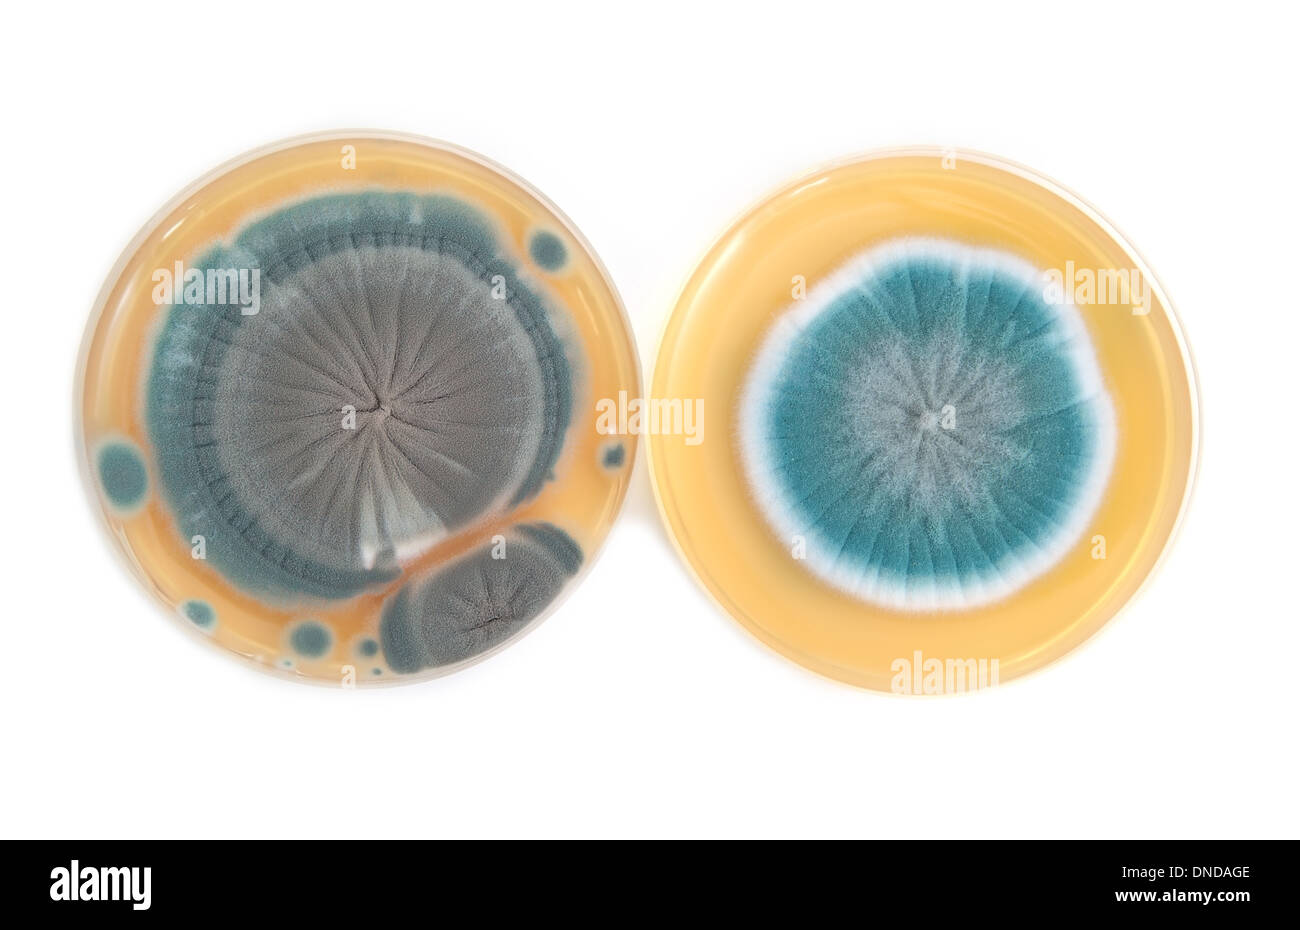 Penicillium fungi on agar plate in laboratory Stock Photo